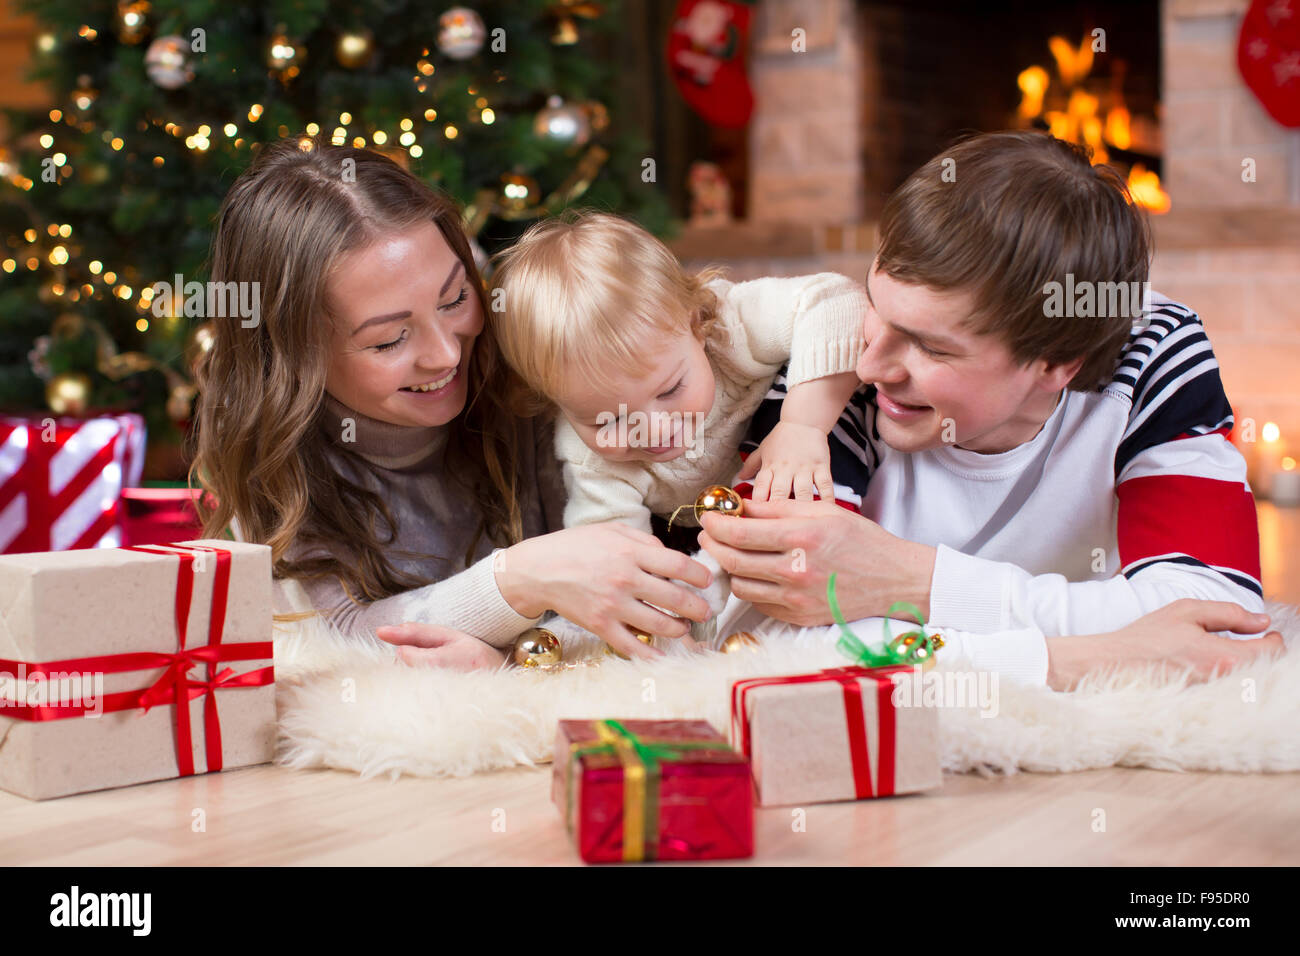 Happy Family Avec petit-fils ont un passe-temps amusant près de l'arbre de Noël et foyer au salon Banque D'Images